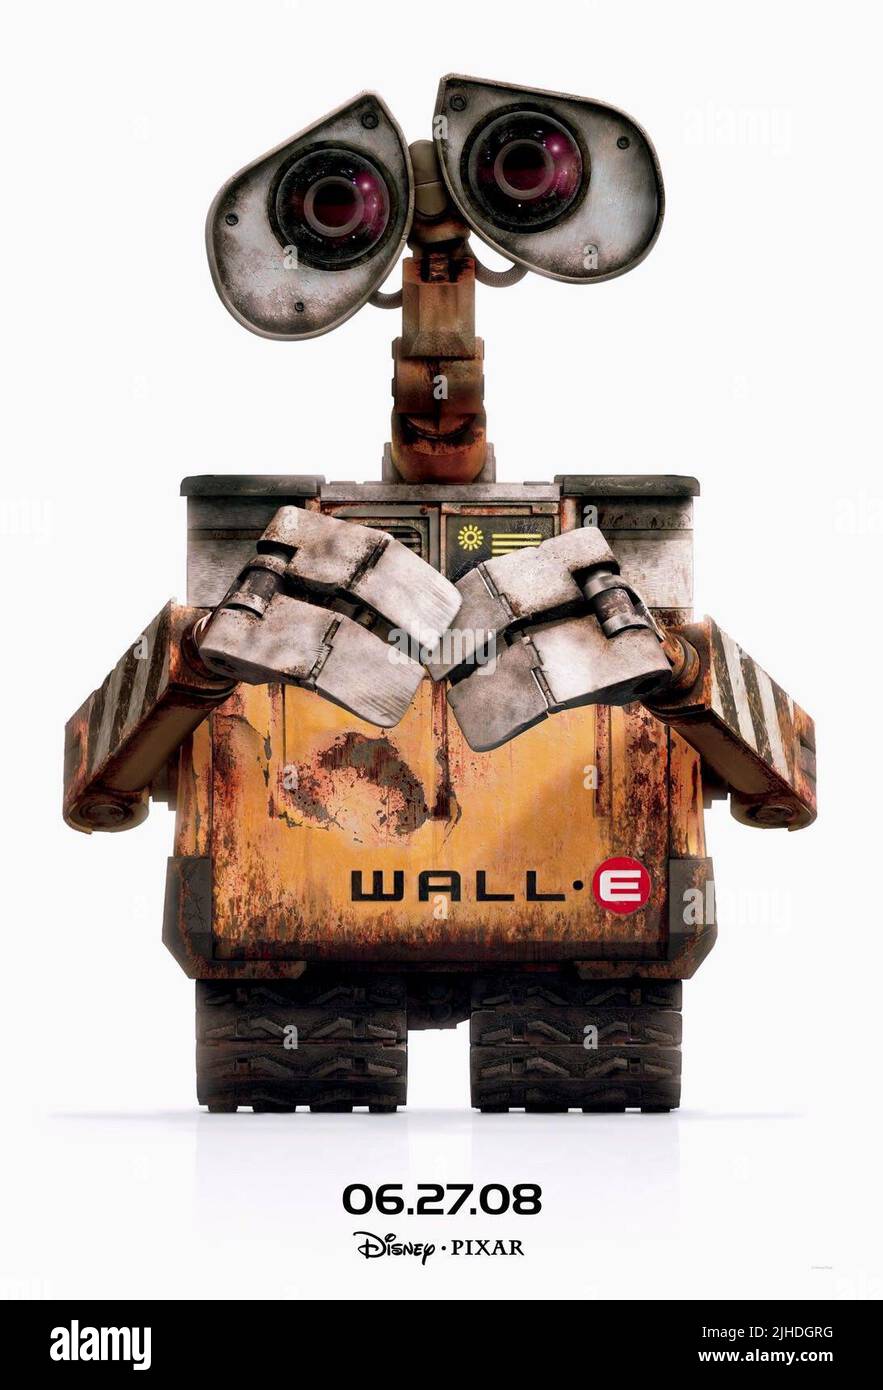 Wall e wall · e der roboter 2008 -Fotos und -Bildmaterial in hoher  Auflösung – Alamy